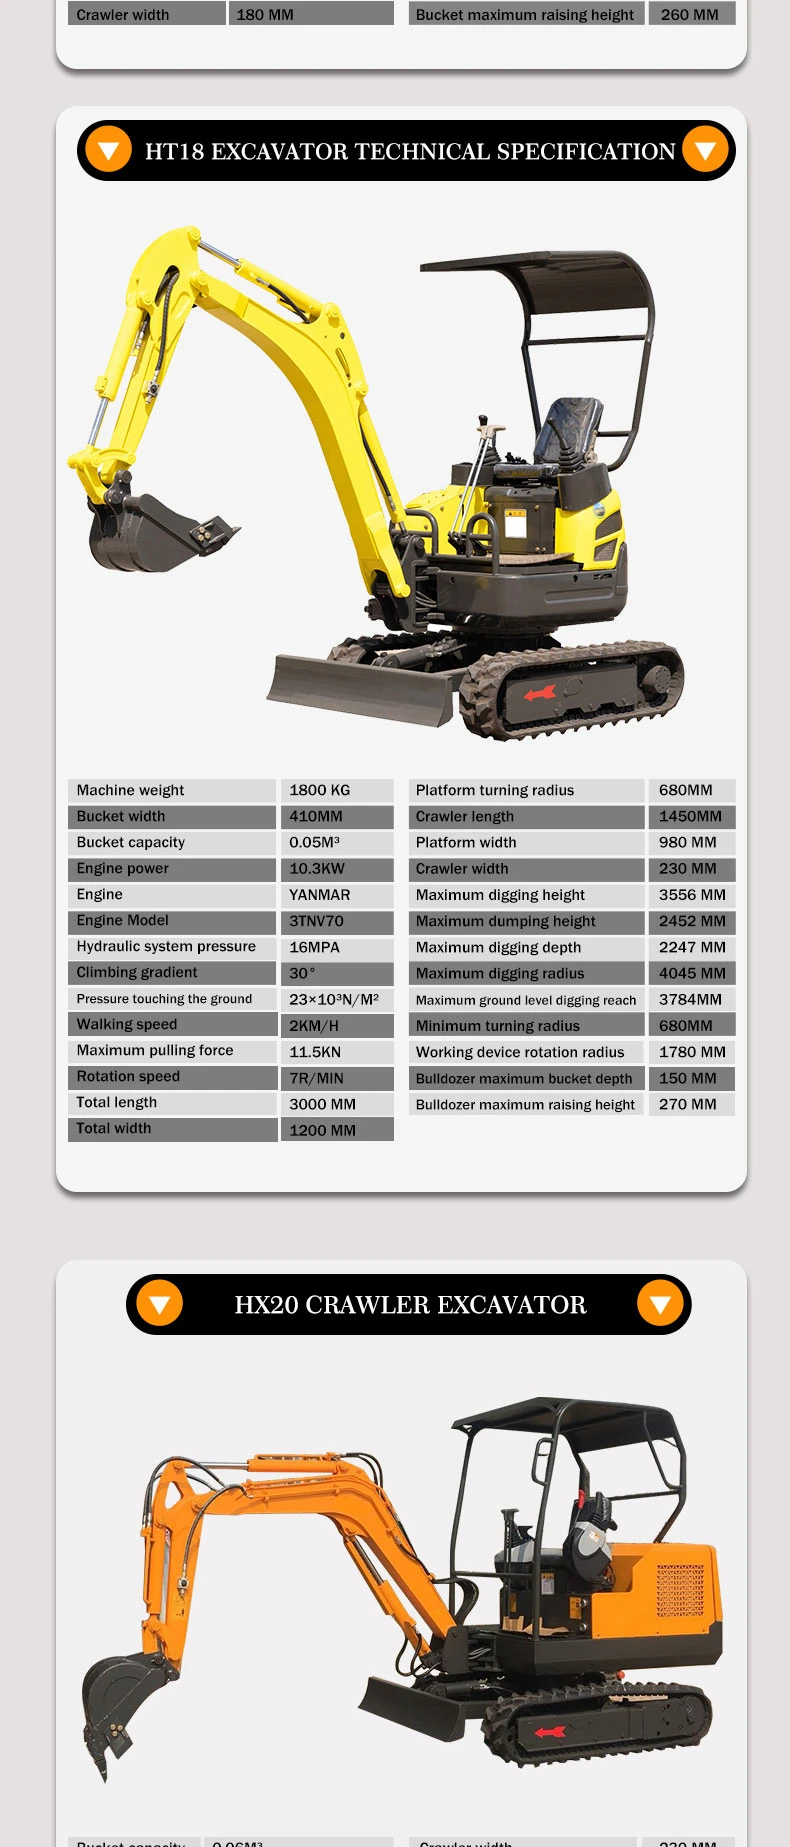 Hixen Mini Excavator Hx22 Micro Excavator Small Crawler Excavator Supply by Hixen